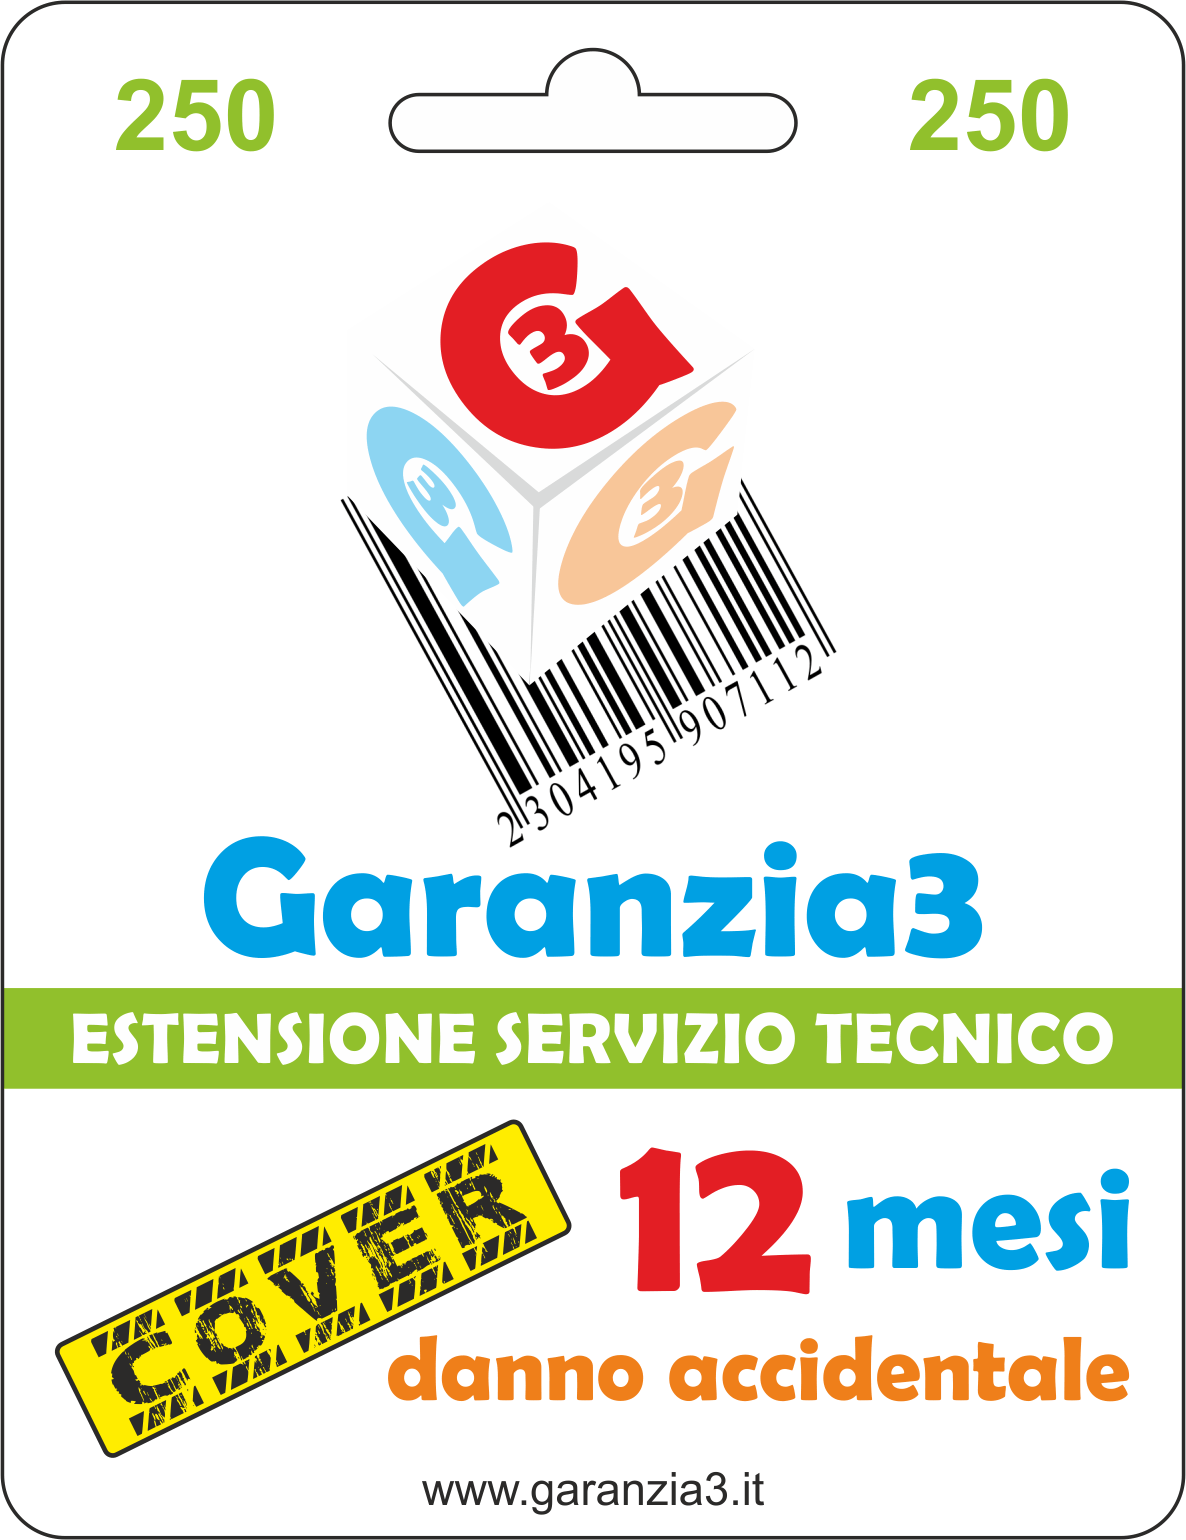 Garanzia3 Cover 250 - Dagimarket